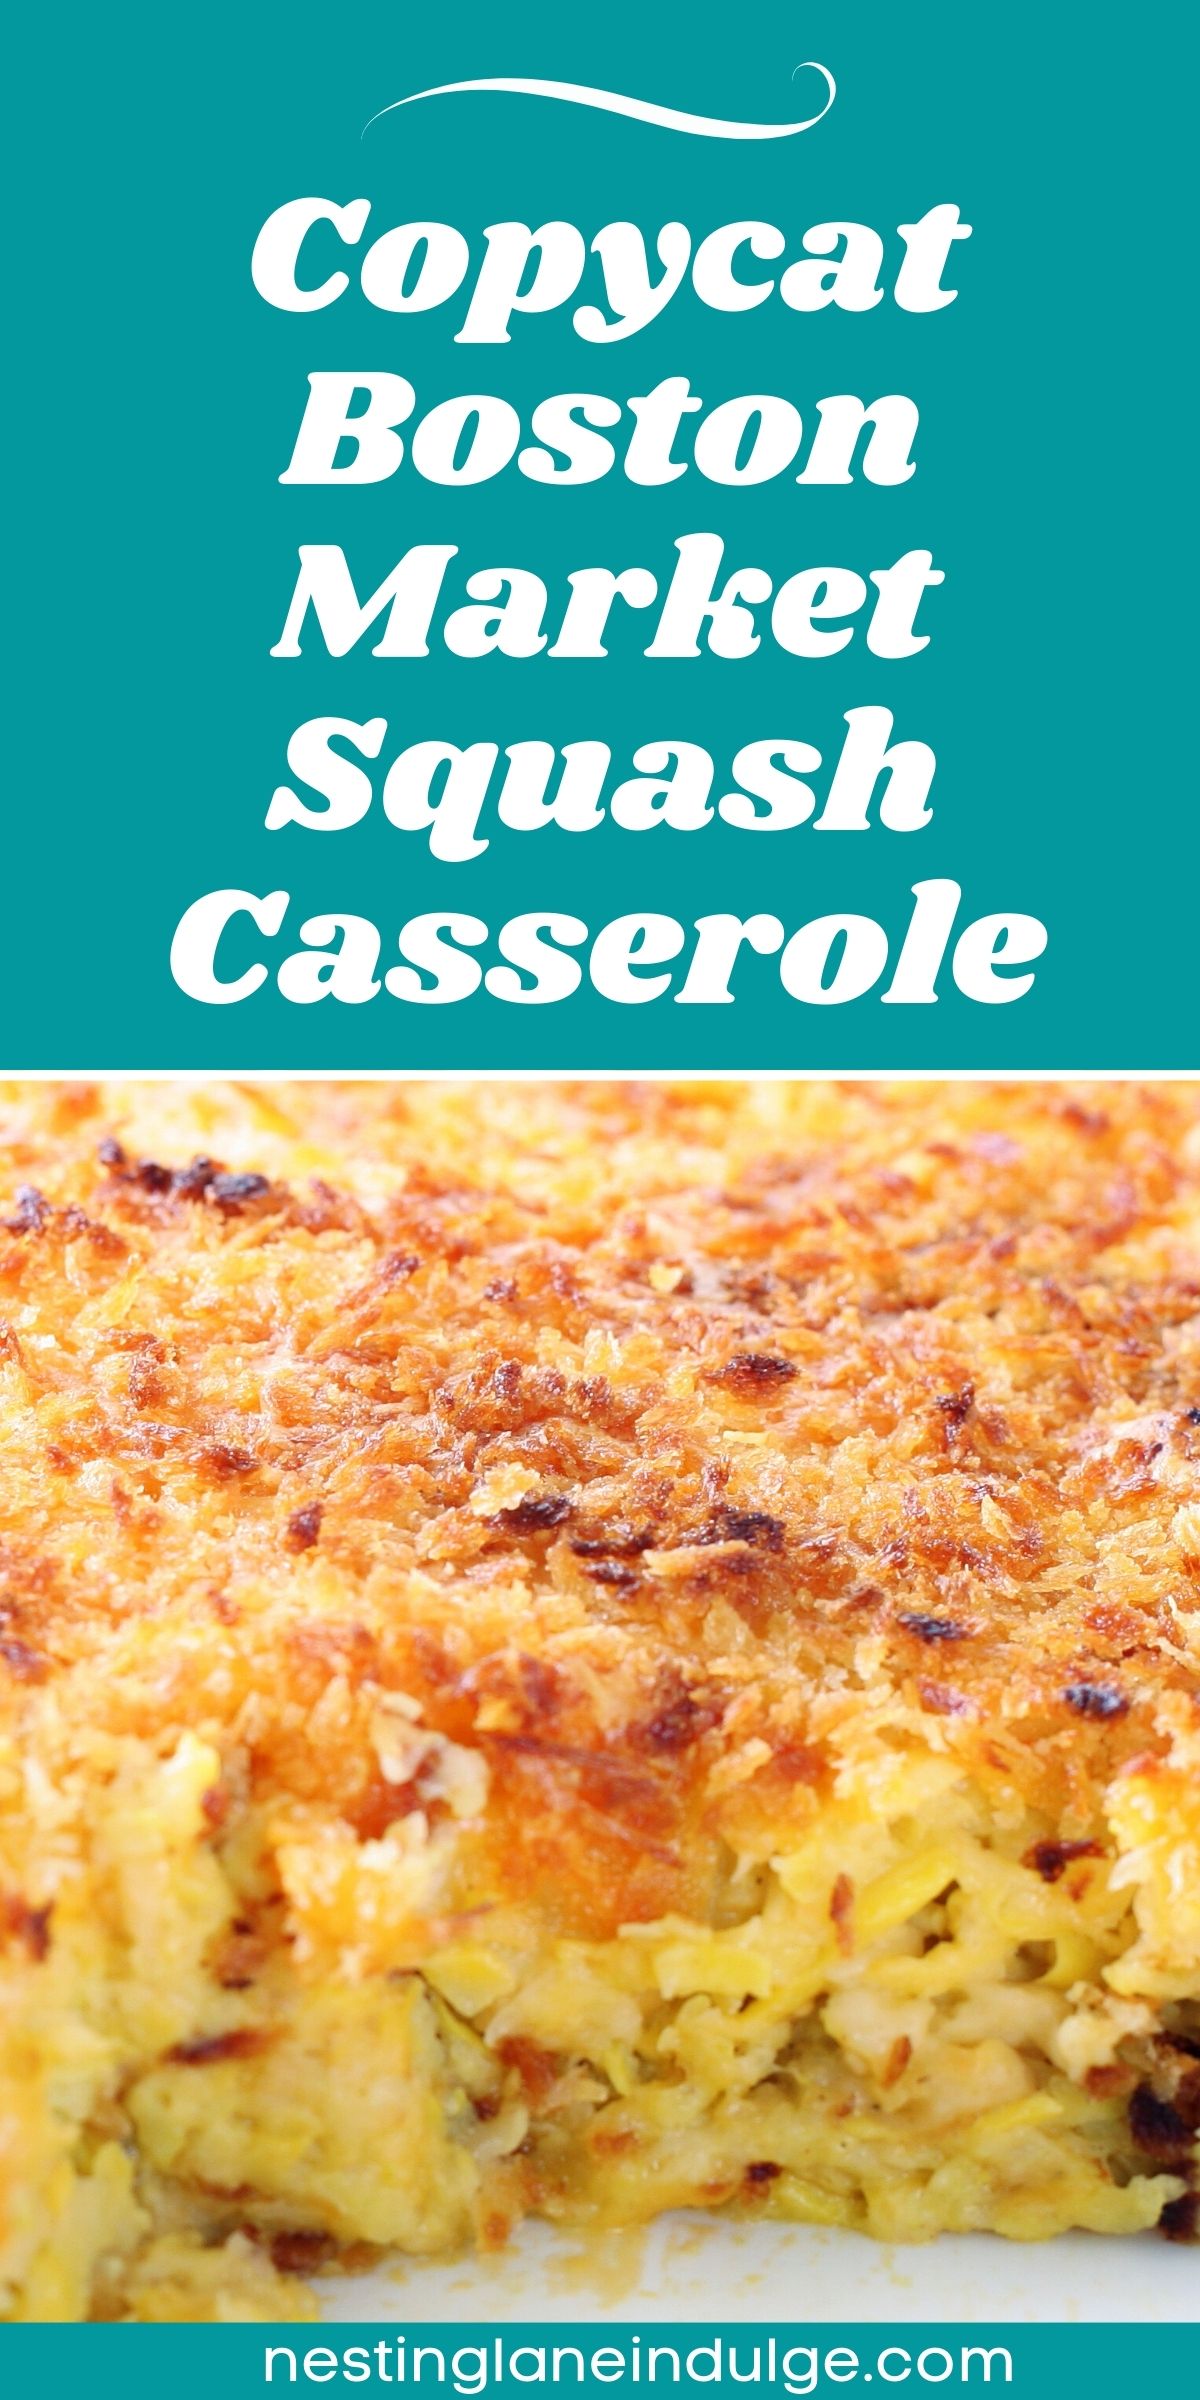 Graphic for Pinterest of Boston Market Squash Casserole (Copycat) Recipe.